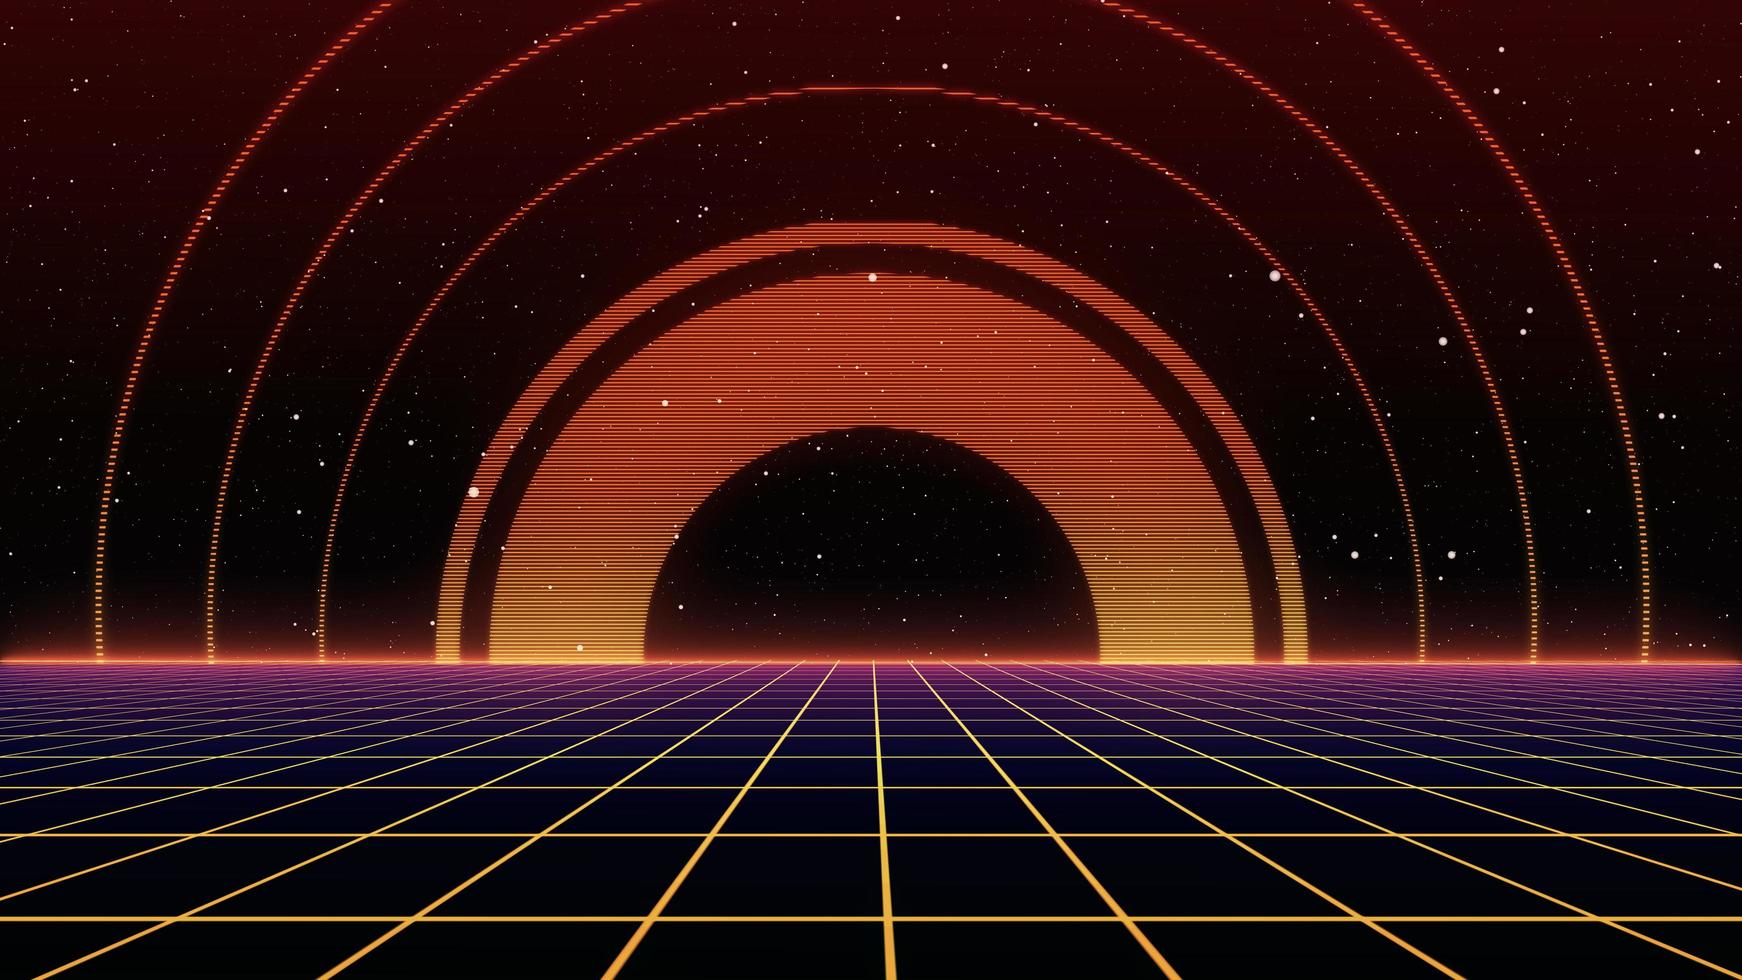 sfondo fantascientifico in stile retrò anni '80 futuristico con paesaggio a griglia laser. stile di superficie cibernetica digitale degli anni '80. foto